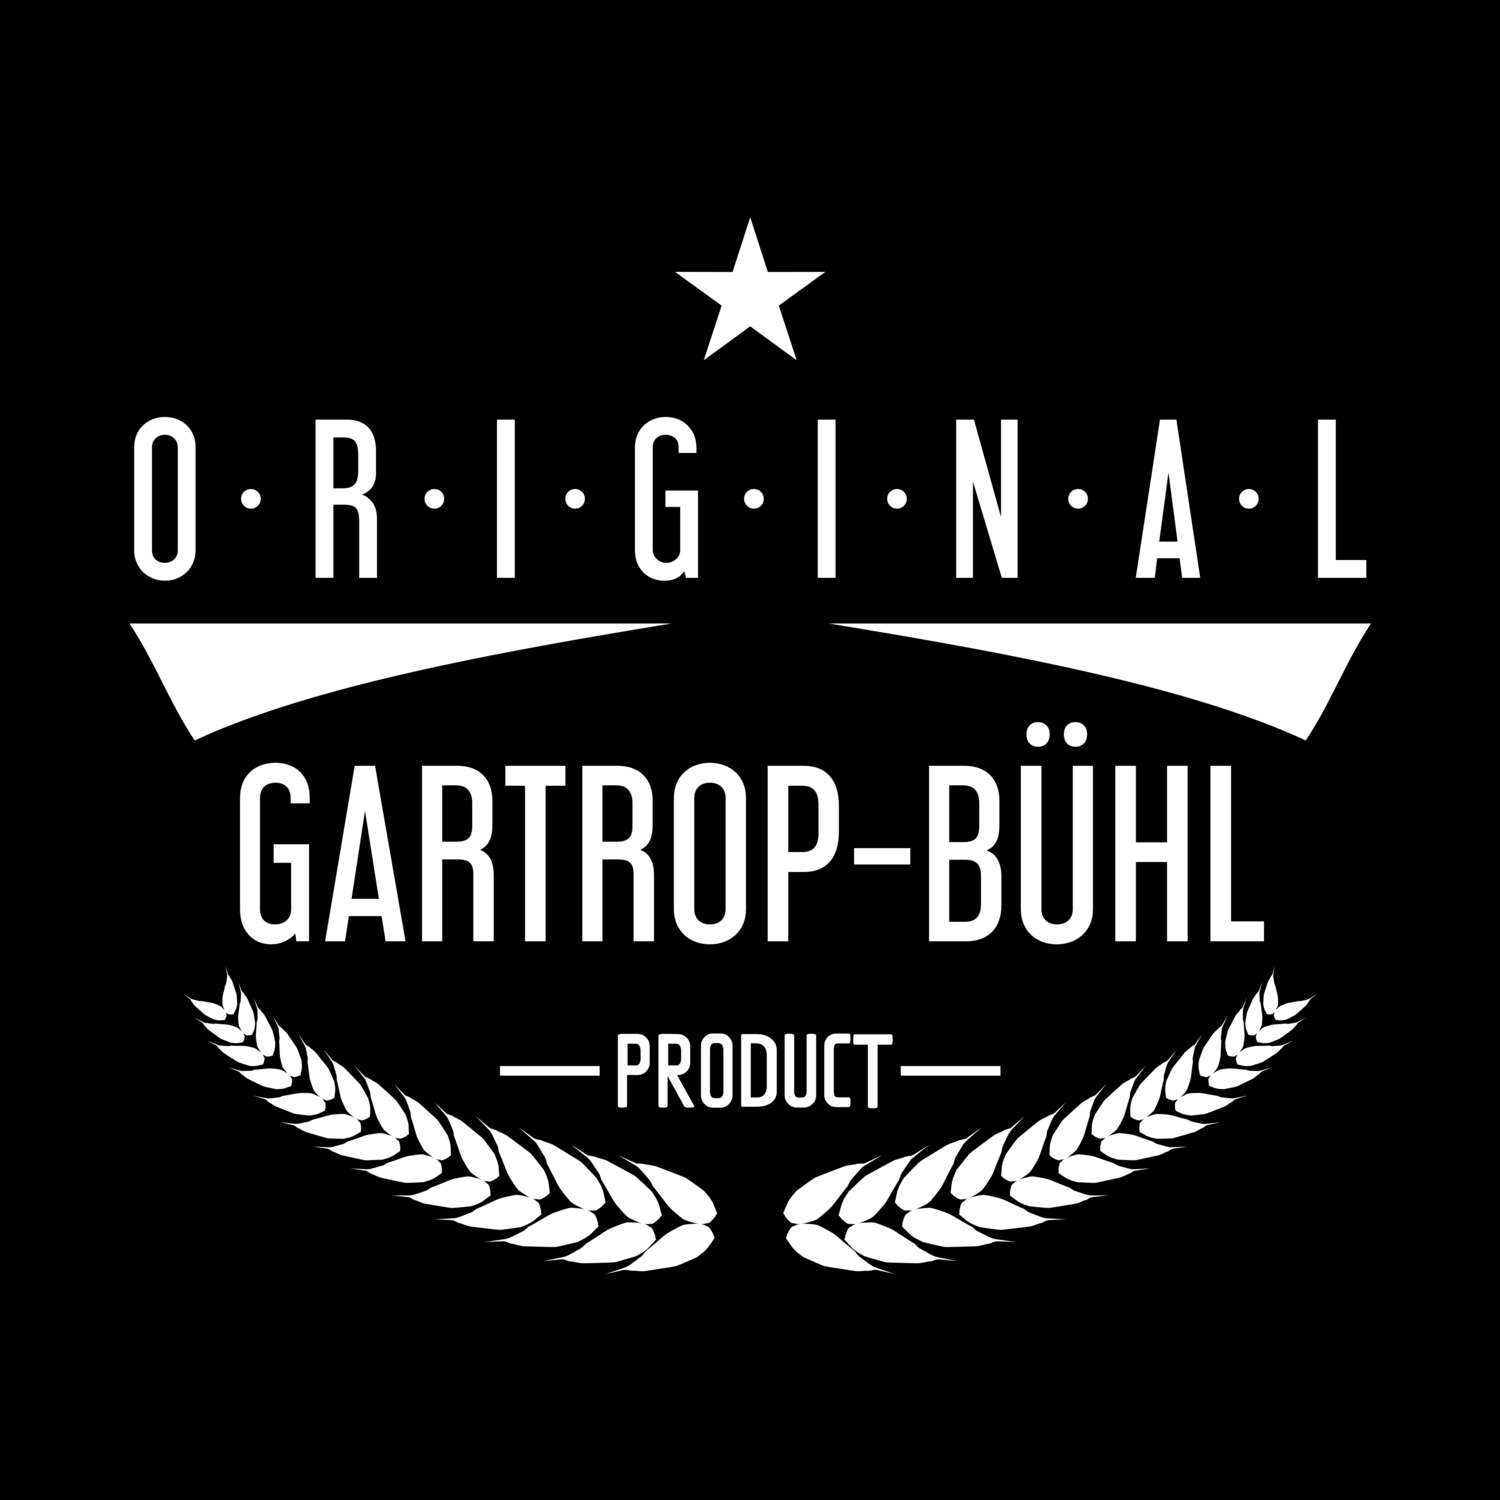 Gartrop-Bühl T-Shirt »Original Product«